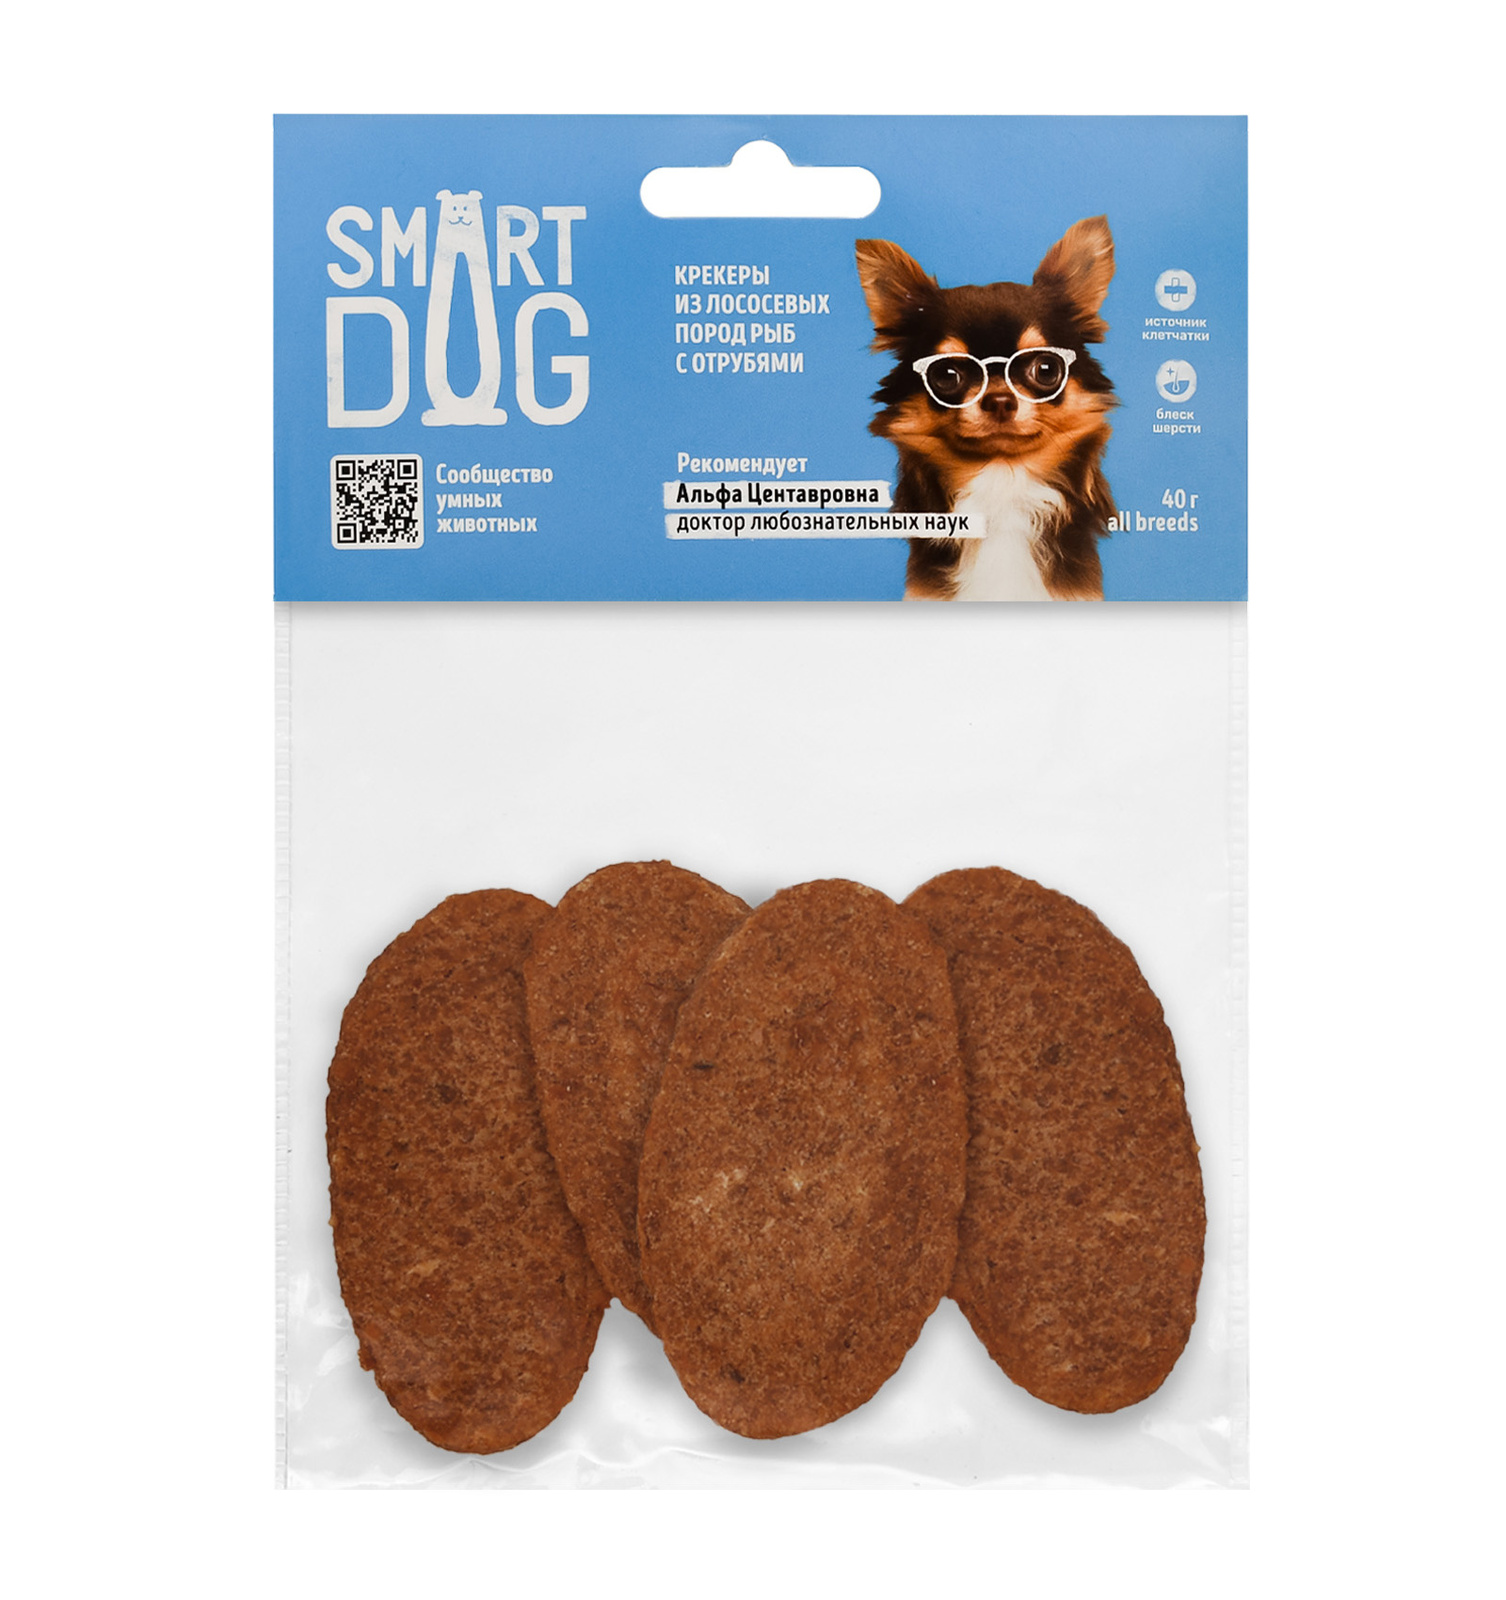 Smart Dog лакомства Smart Dog лакомства крекеры из лососевых пород рыб с отрубями (40 г)